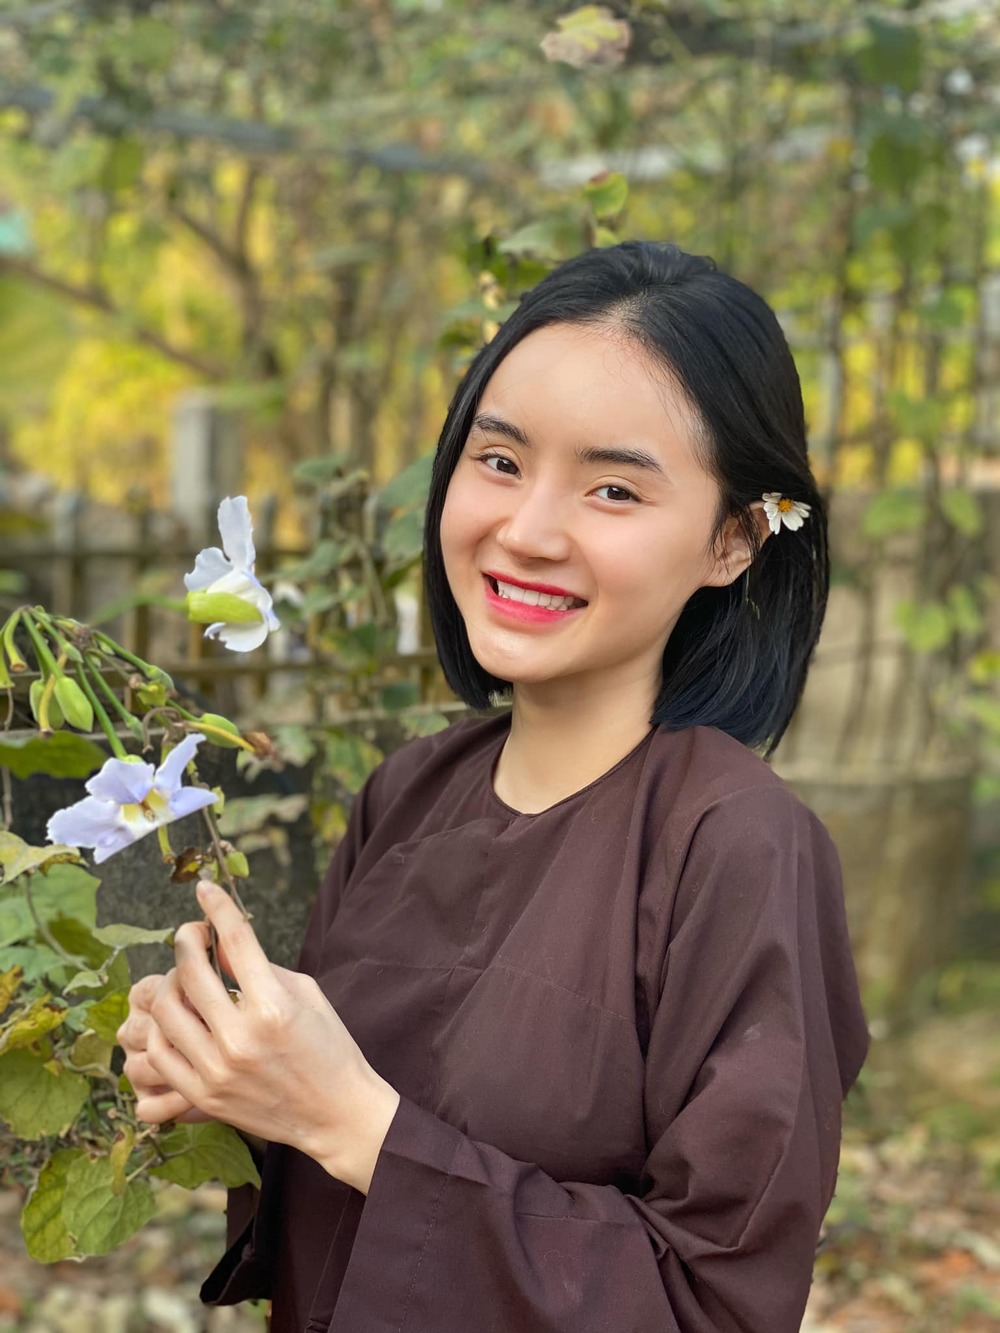 Khán giả dành lời khen cho vẻ đẹp nàng thơ của Phương Trang.